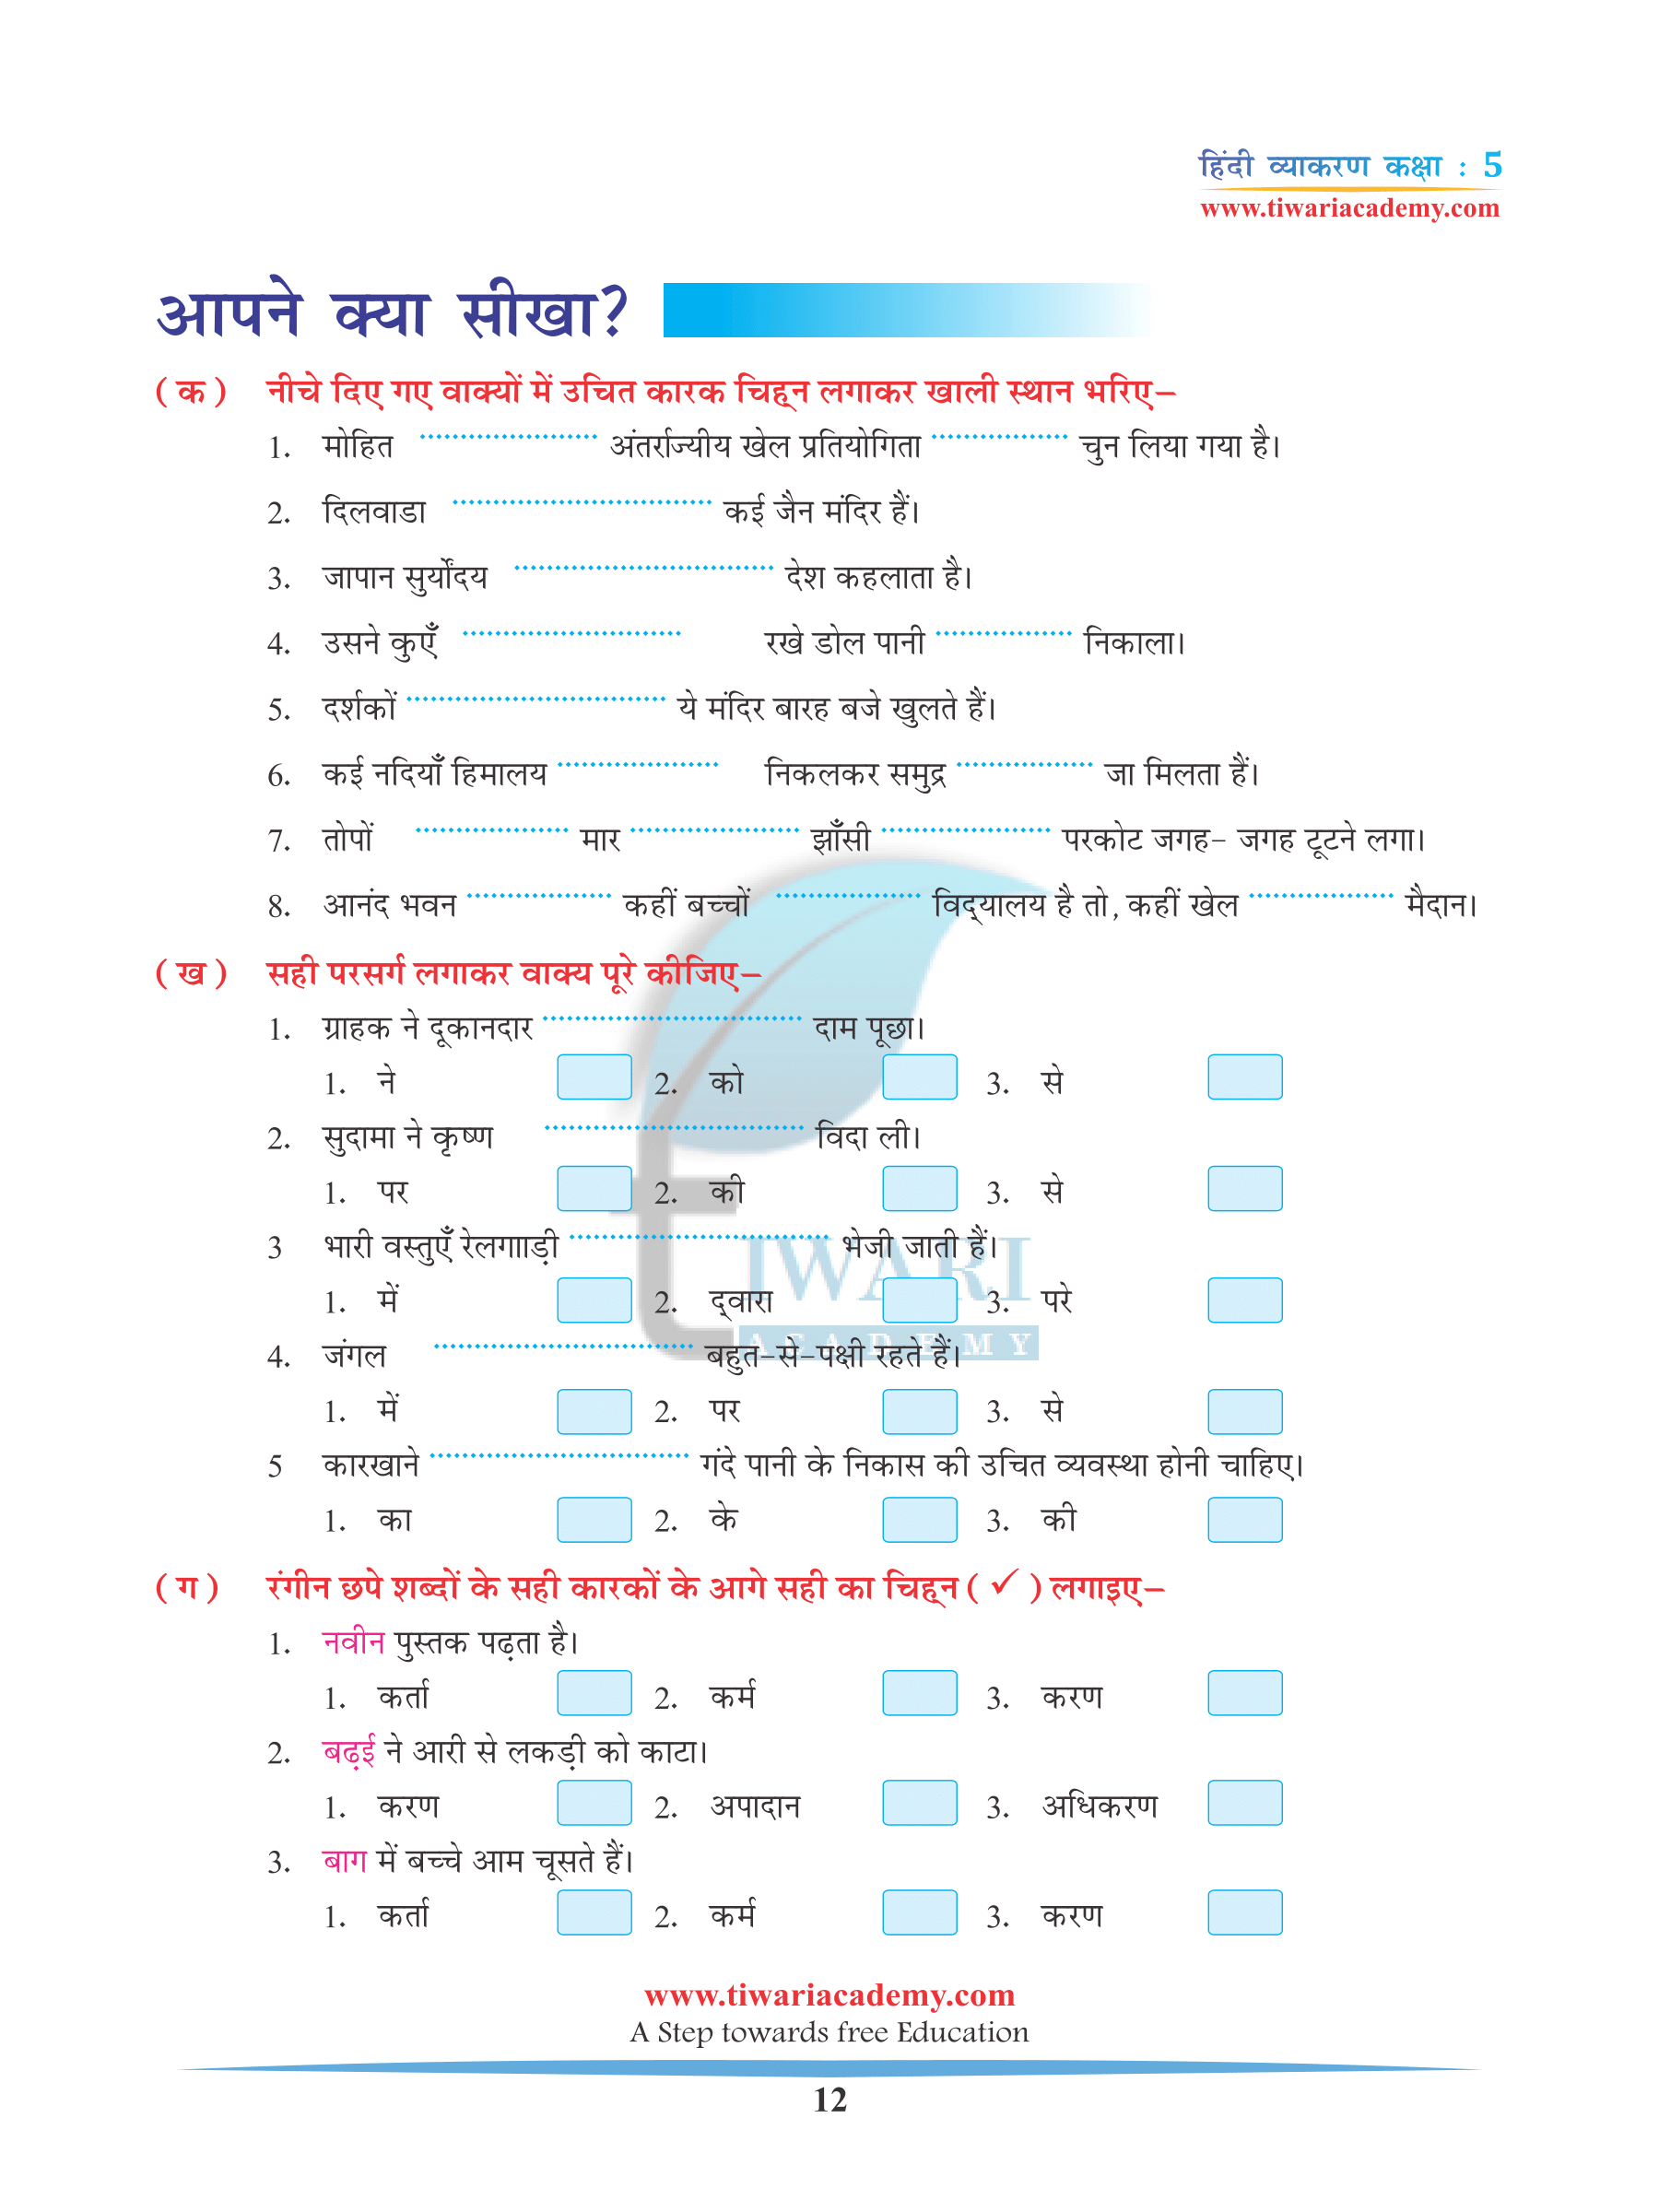 Class 5 Hindi Grammar Chapter 4 Ling, Vachan aur Kaarak up board